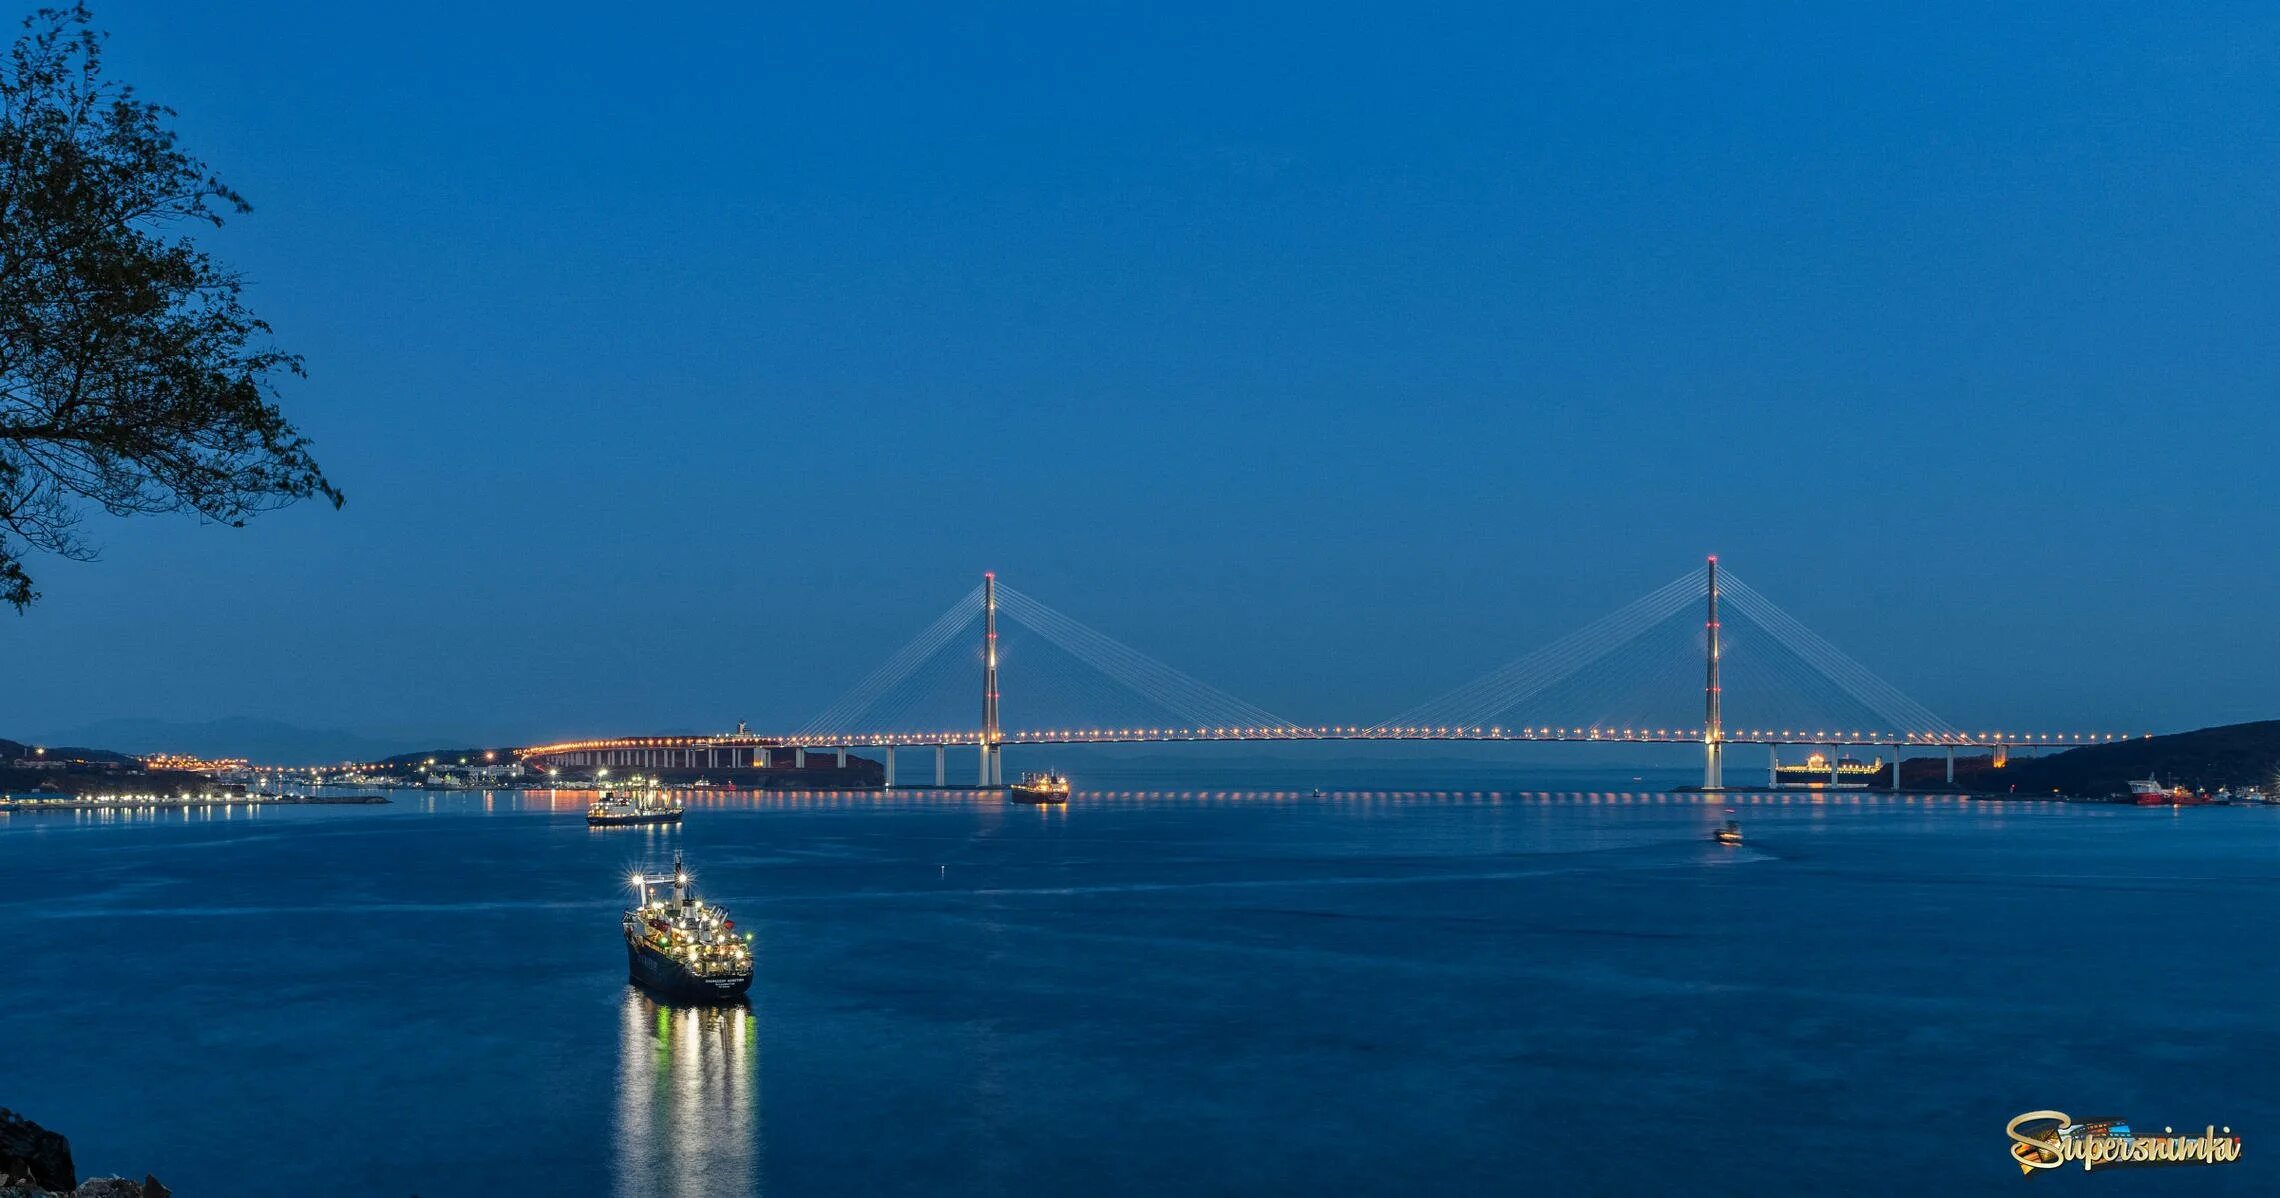 Пролив босфор океан. Стамбул Босфорский пролив. Пролив Босфор Восточный. Пролив Босфор набережная Турции. Пролив Босфор мост.